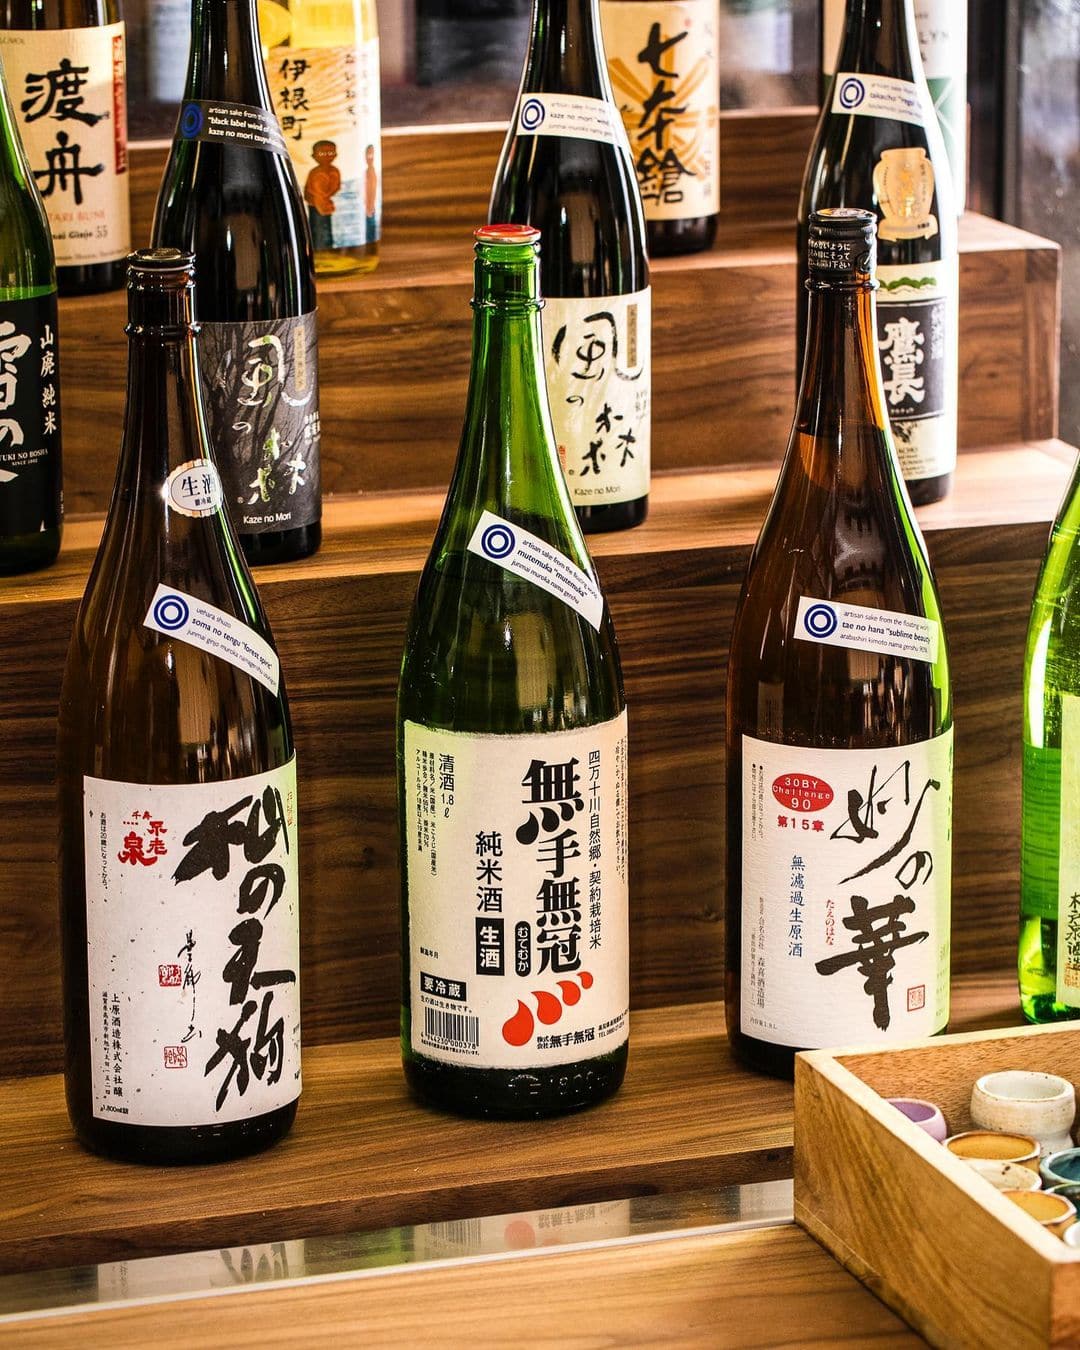 amazing sake selections